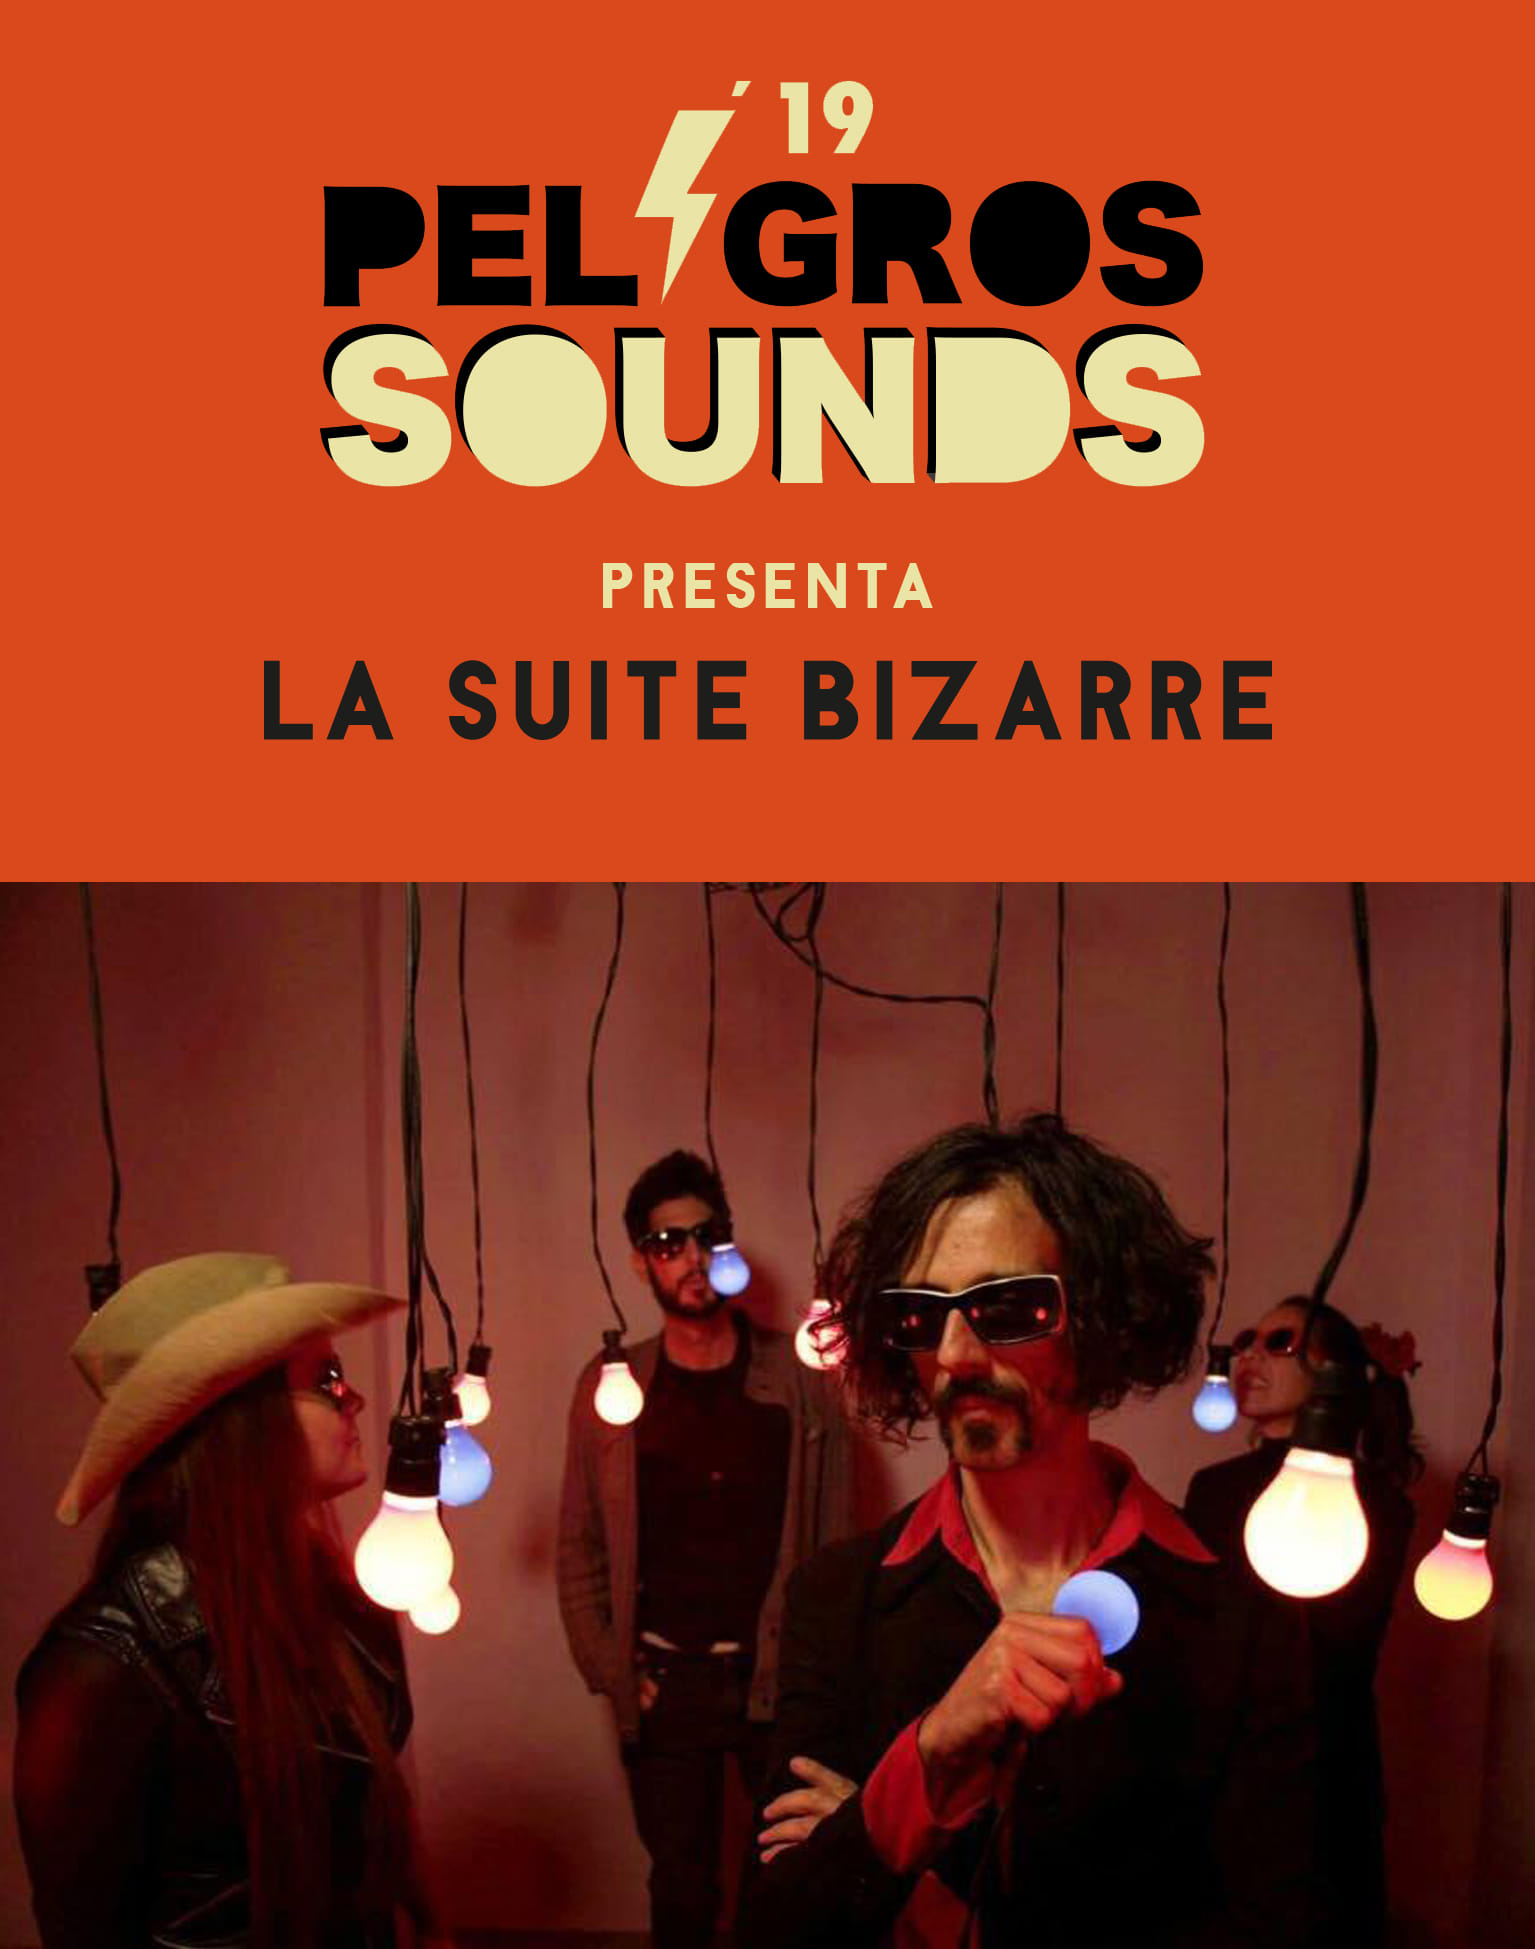 2019- La Suite Bizarre en el festival peligros sounds